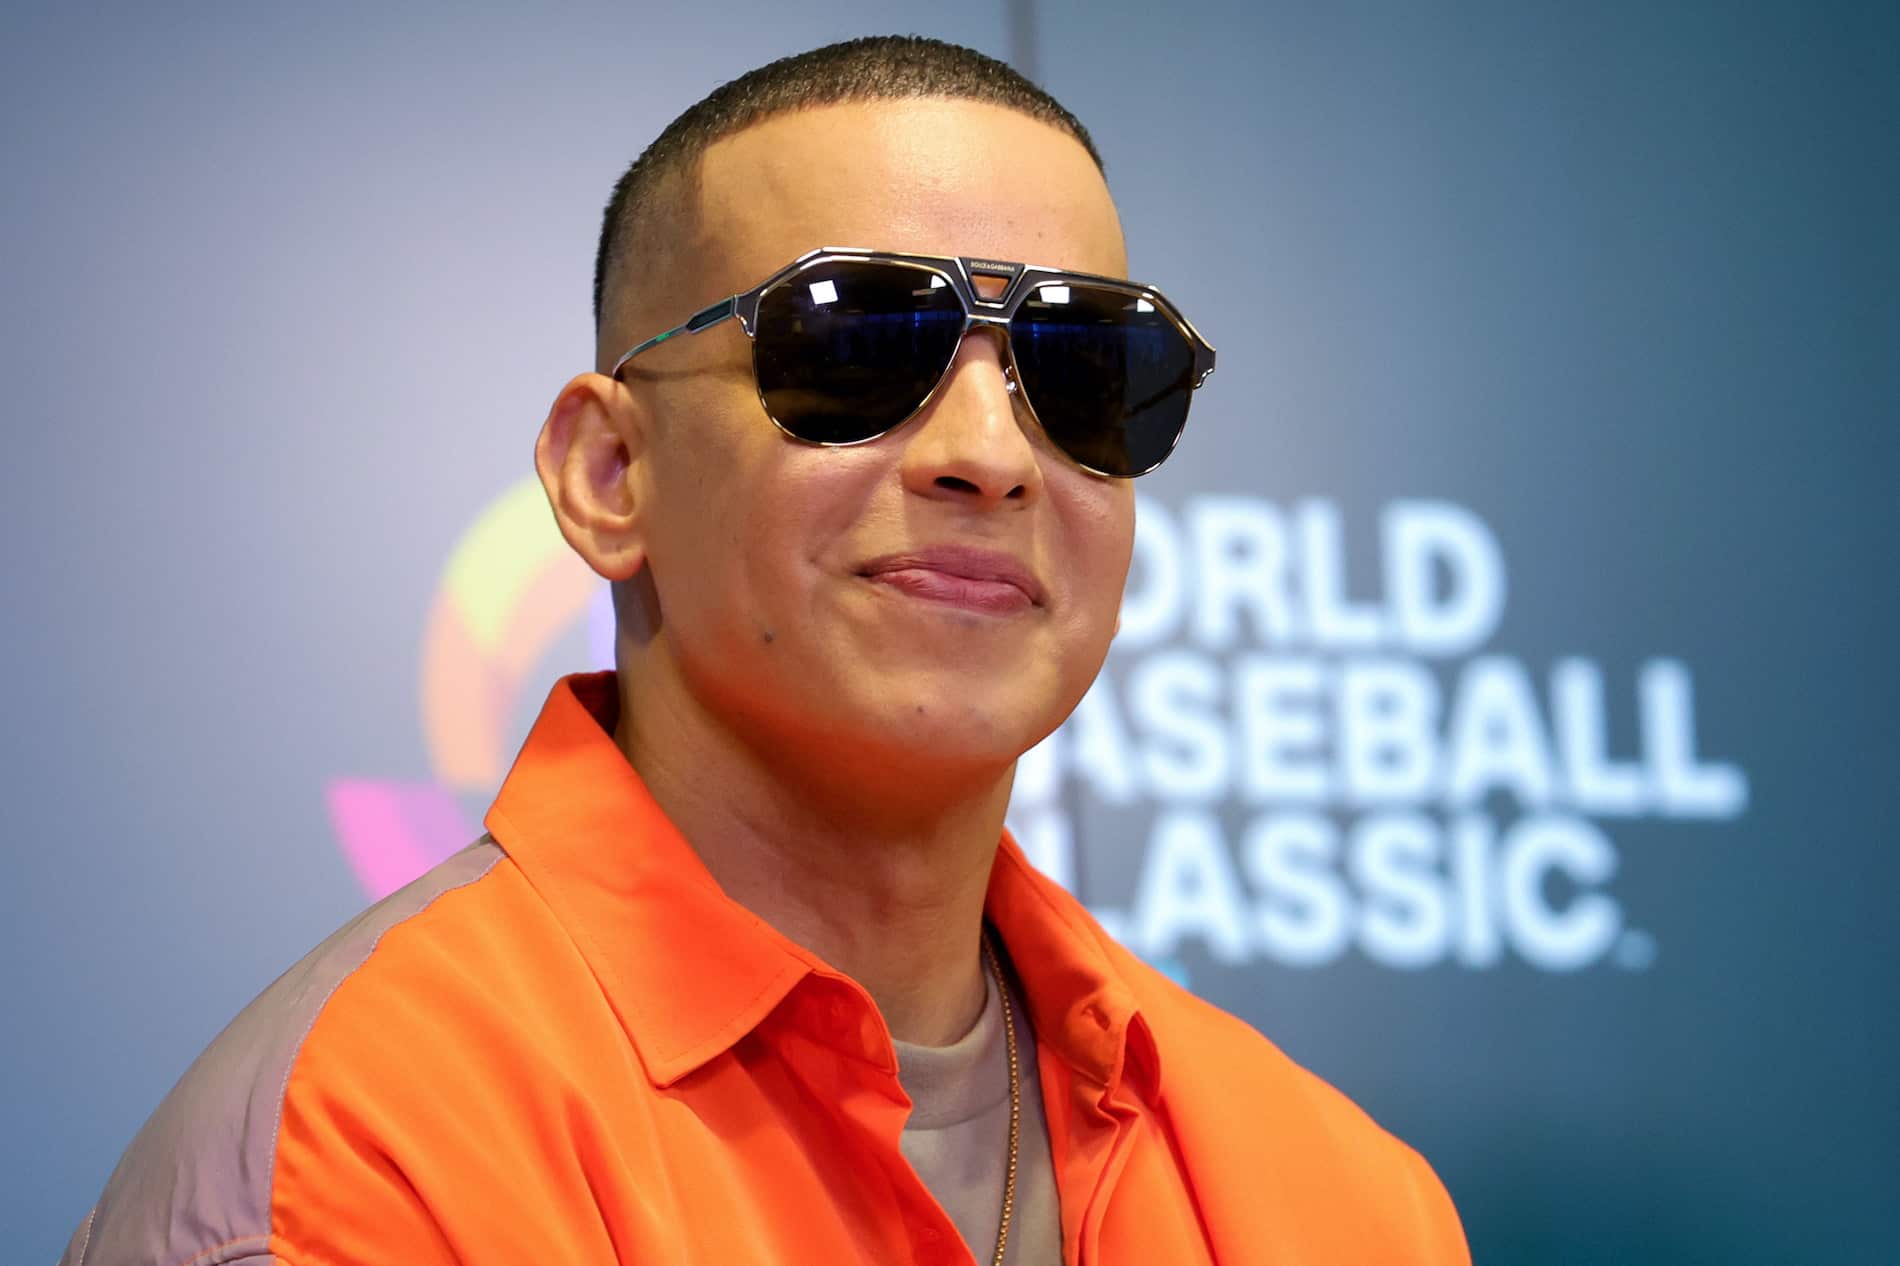 ‘Gasolina’ de Daddy Yankee es el primer tema de reggaetón que ingresará a la Biblioteca del Congreso de EE.UU.